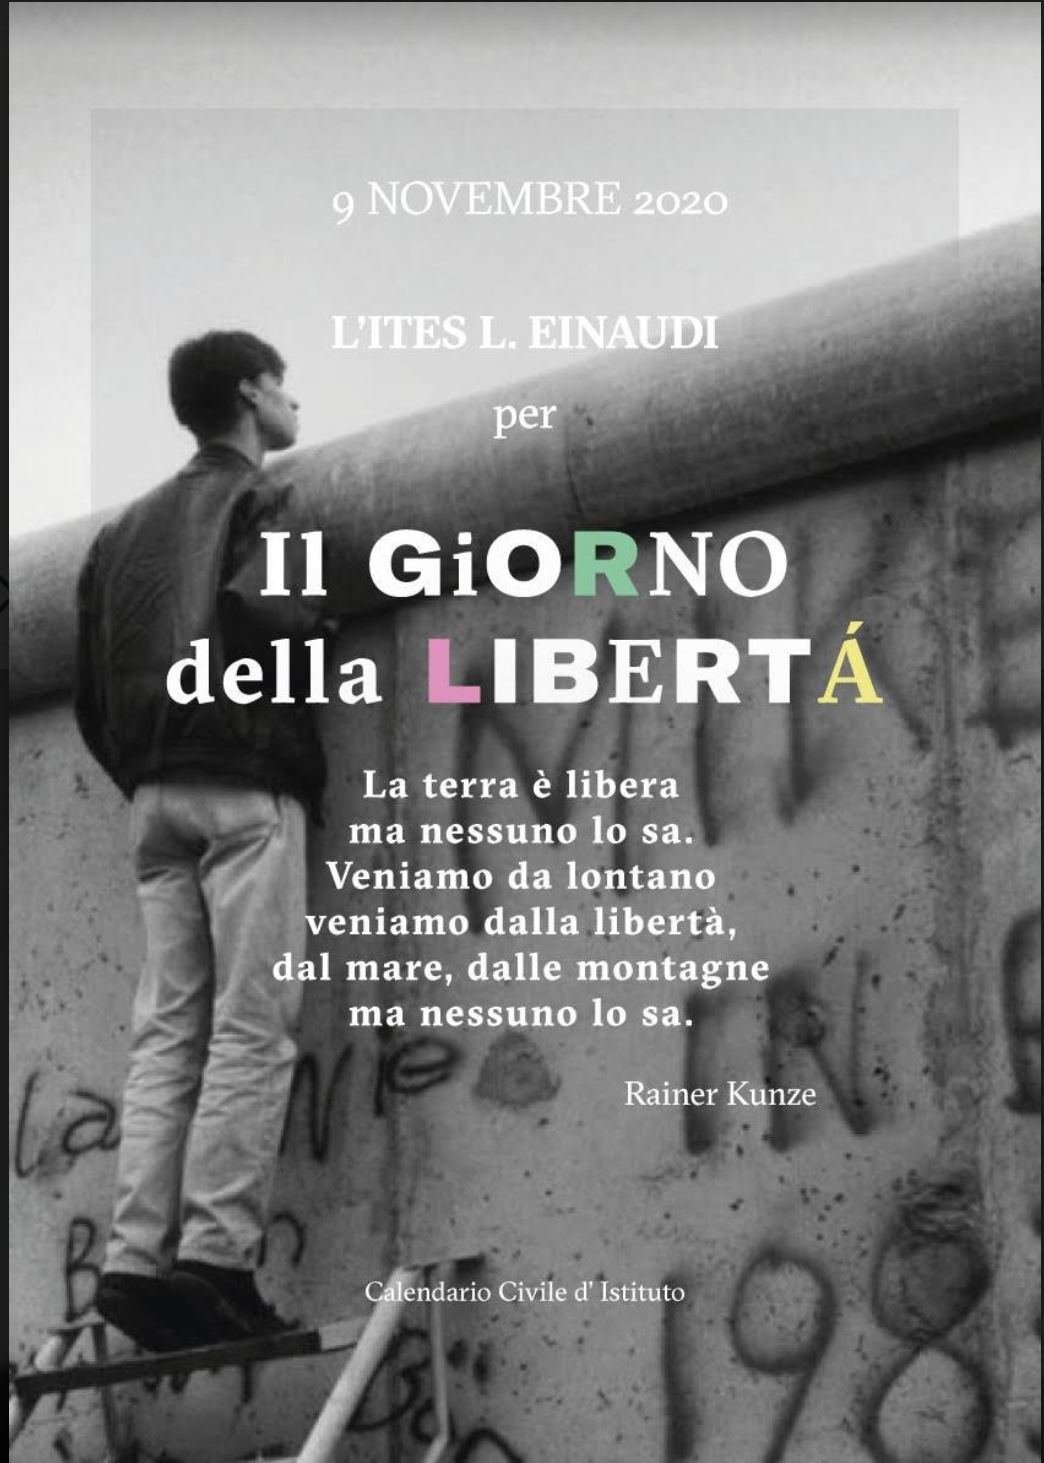 9 novembre il giorno della libertà - ITES Luigi Einaudi